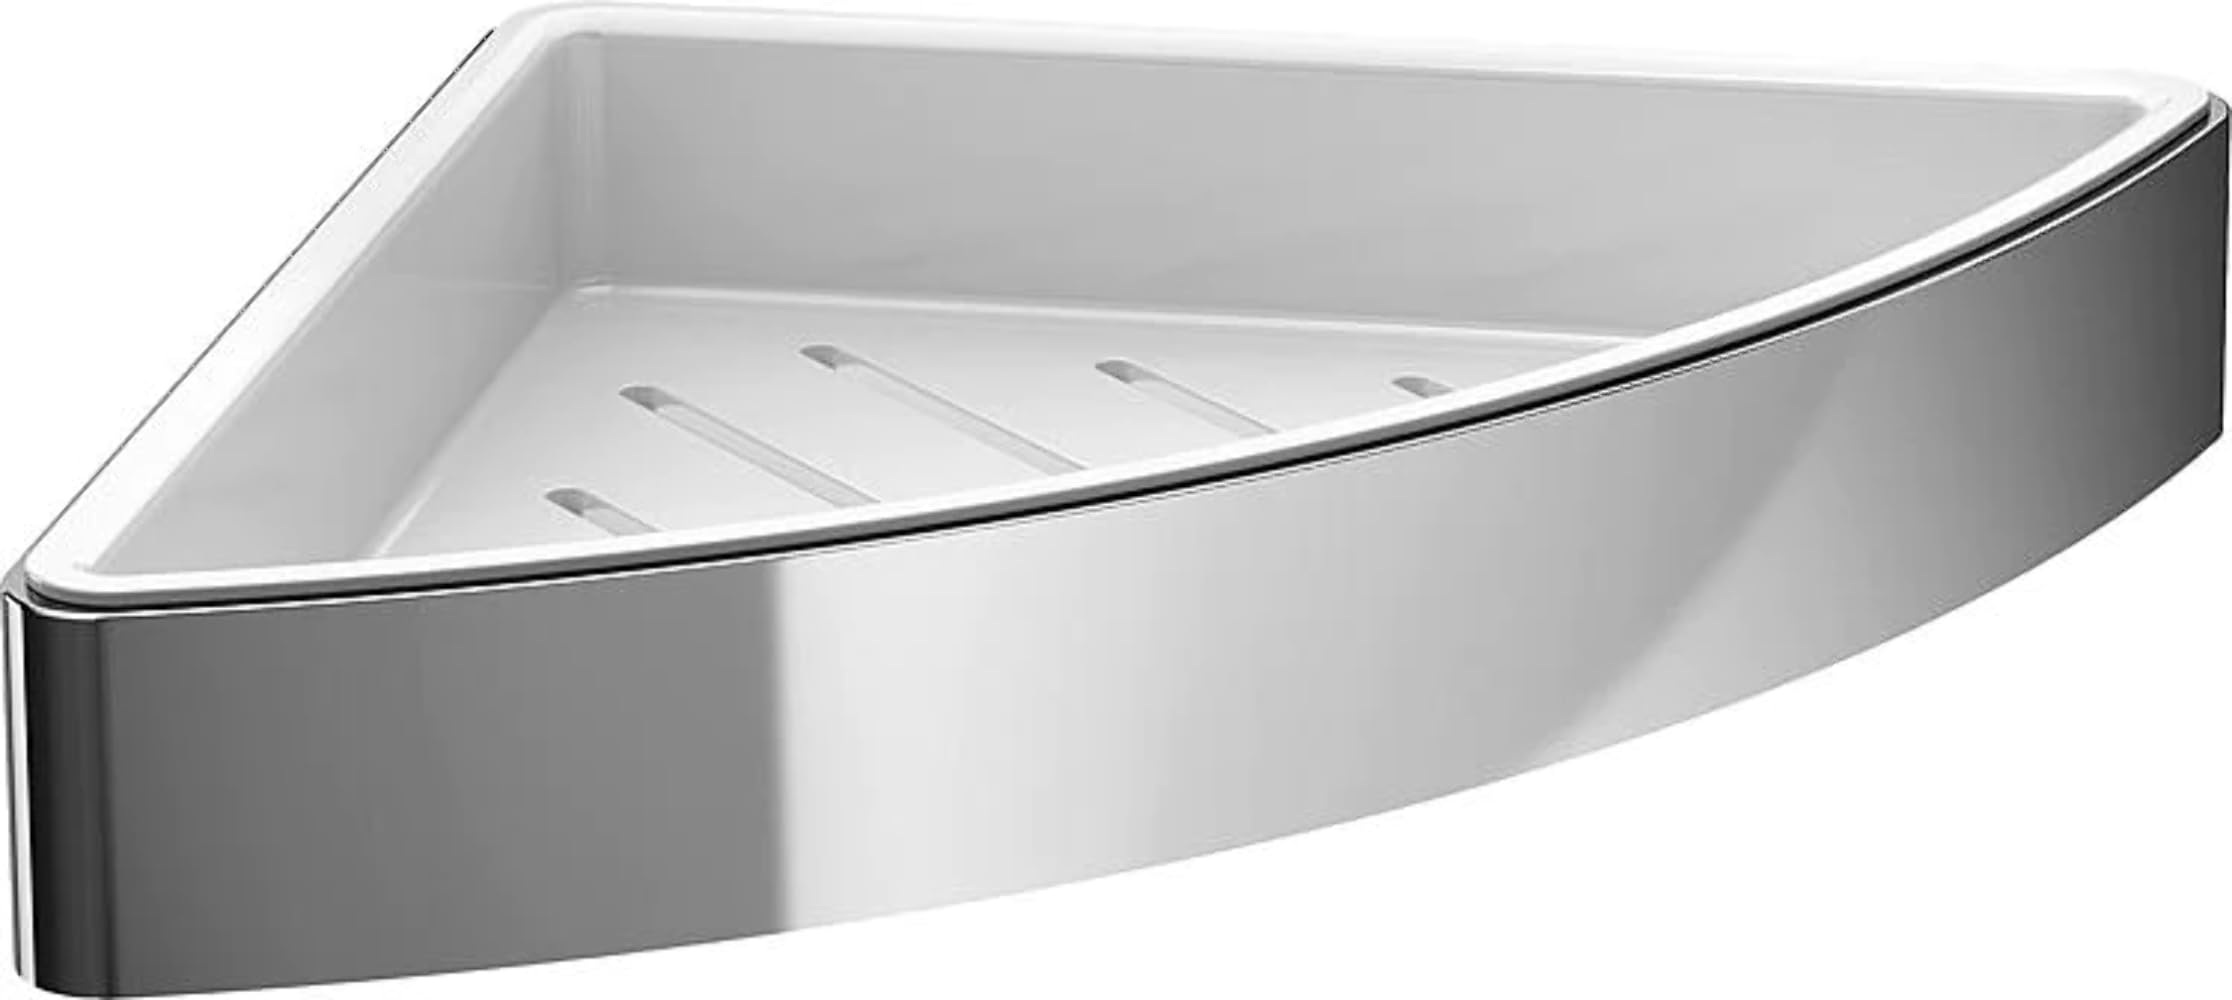 Emco Loft Eckseifenkorb zum Schrauben mit herausnehmbarem Einsatz, hochwertige Duschablage aus Aluminium und Kunststoff, Duschkorb für Badutensilien, chromfarben/weiß